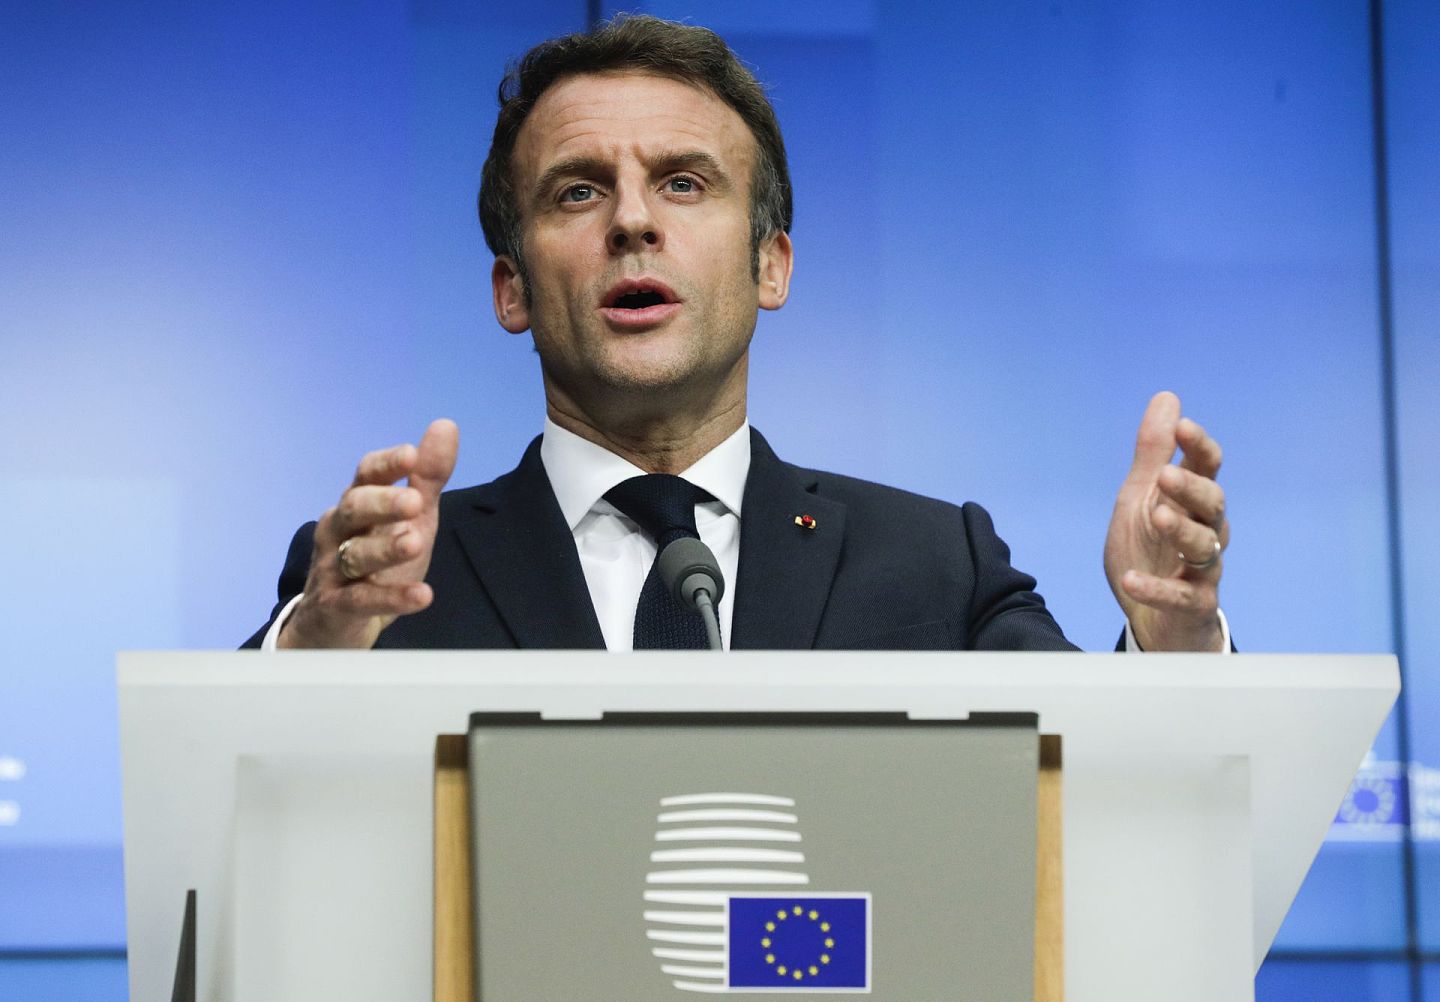 图为法国总统埃马纽埃尔·马克龙(Emmanuel Macron)于2月25日在欧盟乌克兰问题特别峰会后讲话。此次大会确定了欧盟对俄罗斯的“制裁”方向。（美联社）